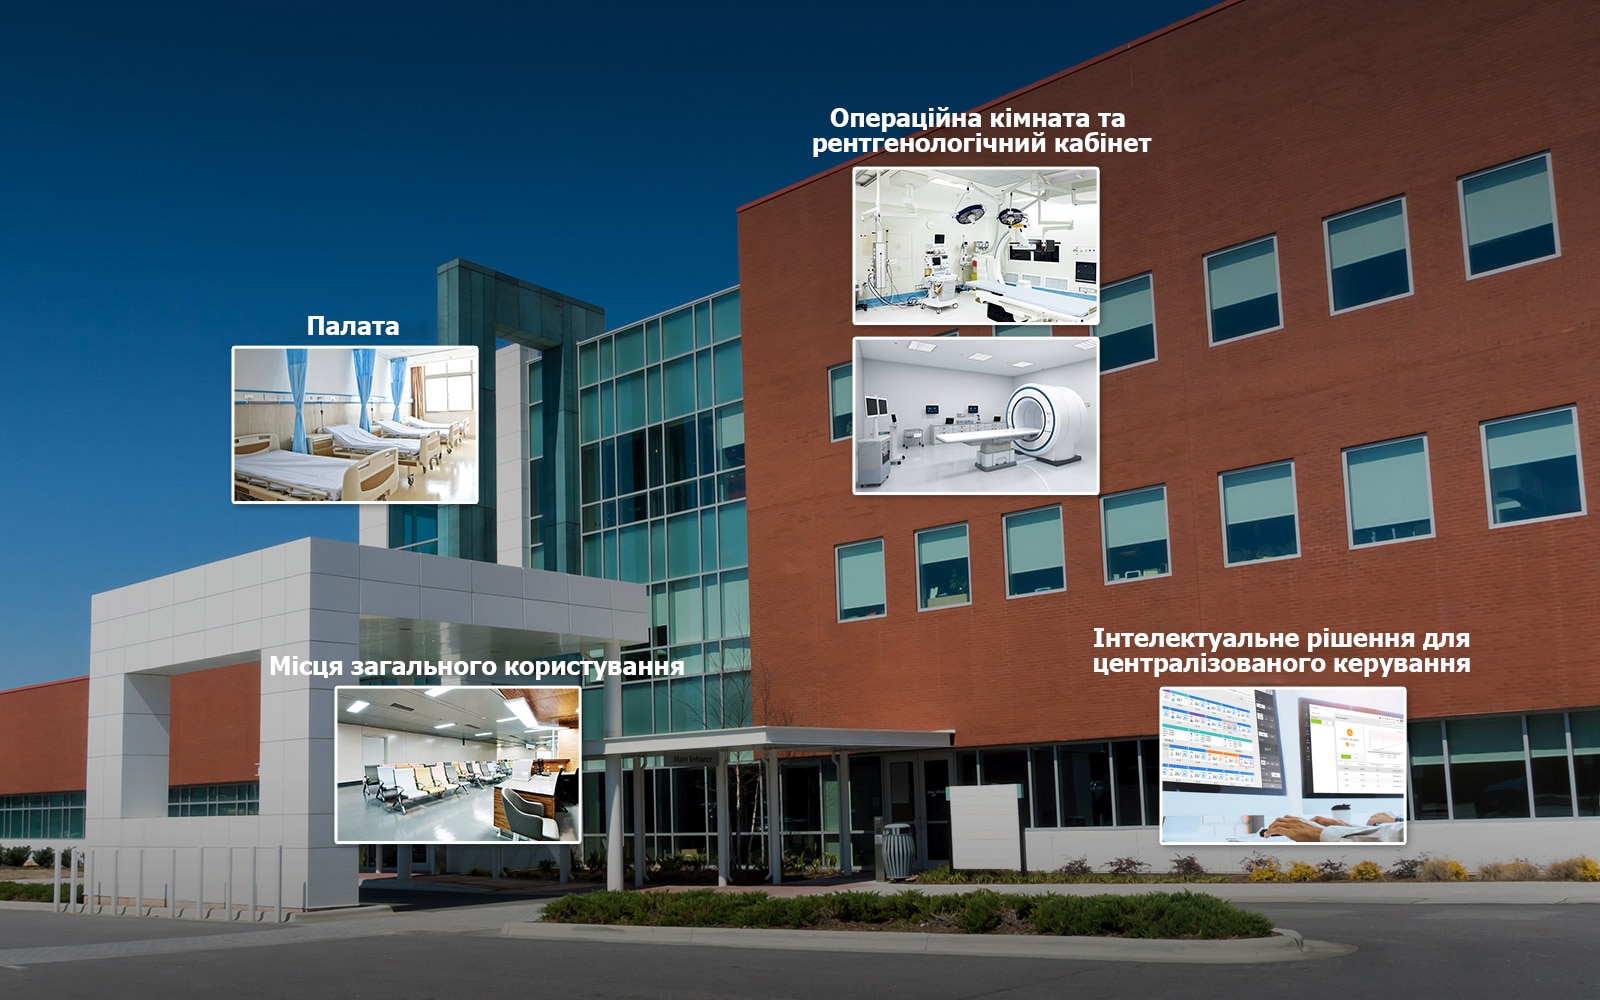 Зображення лікарні з ескізами палати, місць загального користування, операційної кімнати, рентгенологічного кабінету та центру керування.